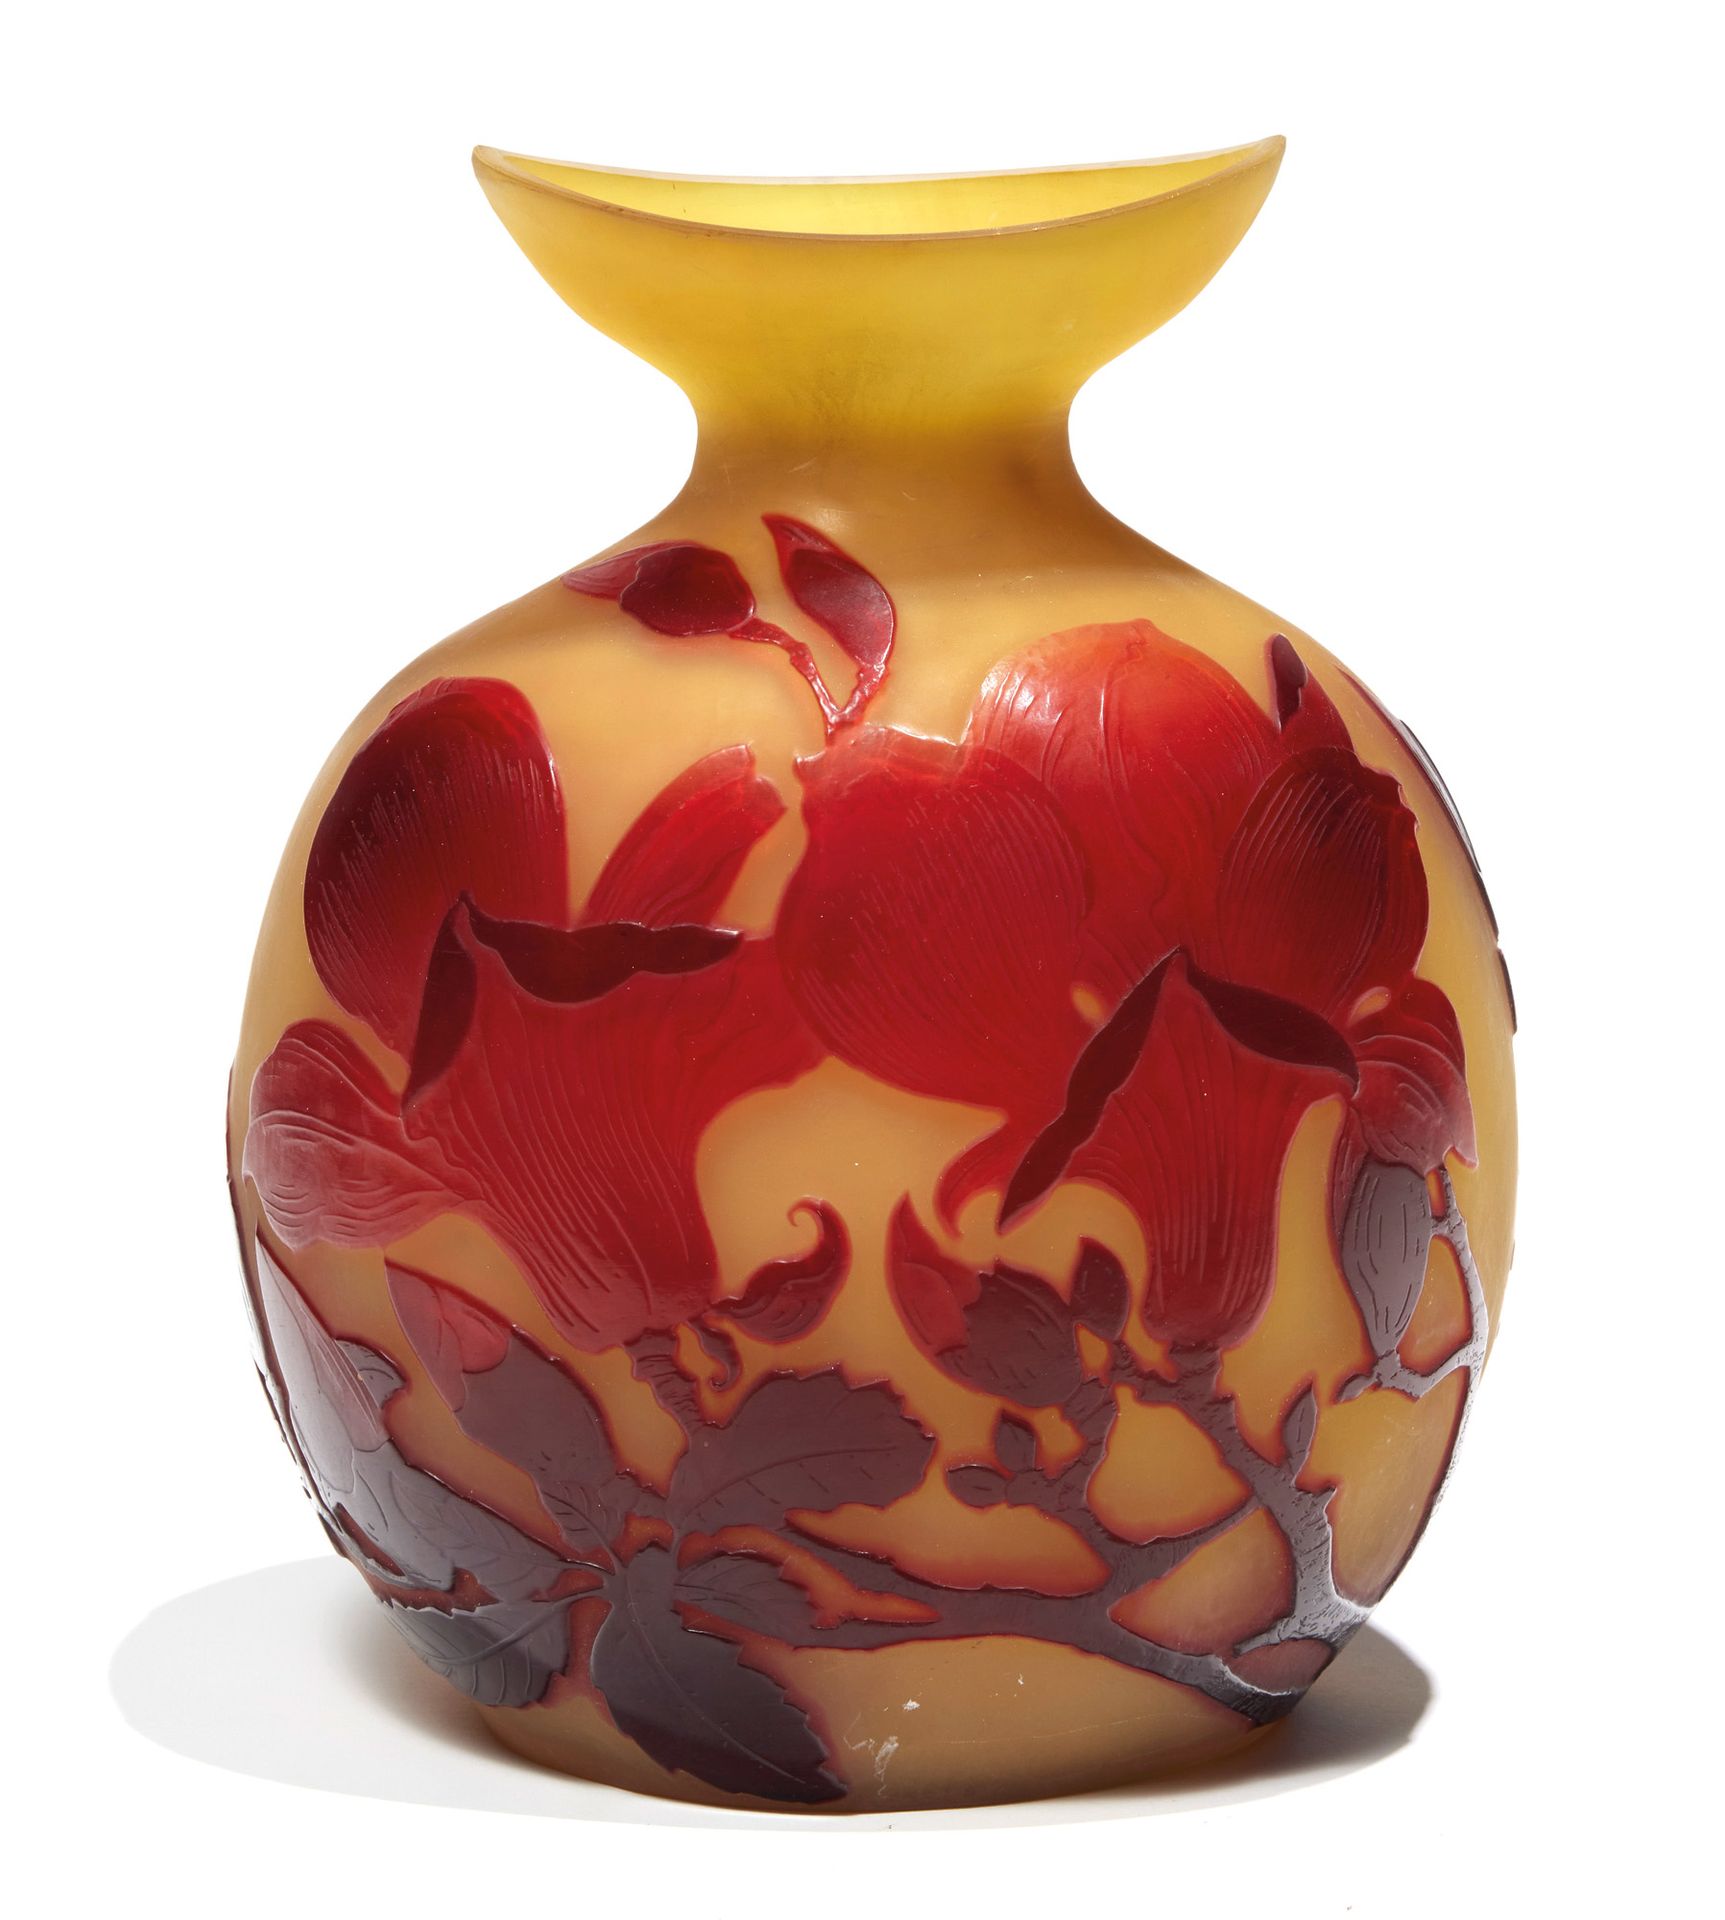 ÉTABLISSEMENTS GALLÉ GALLÉ ESTABLISHMENTS

A multi-layered glass gourd vase with&hellip;